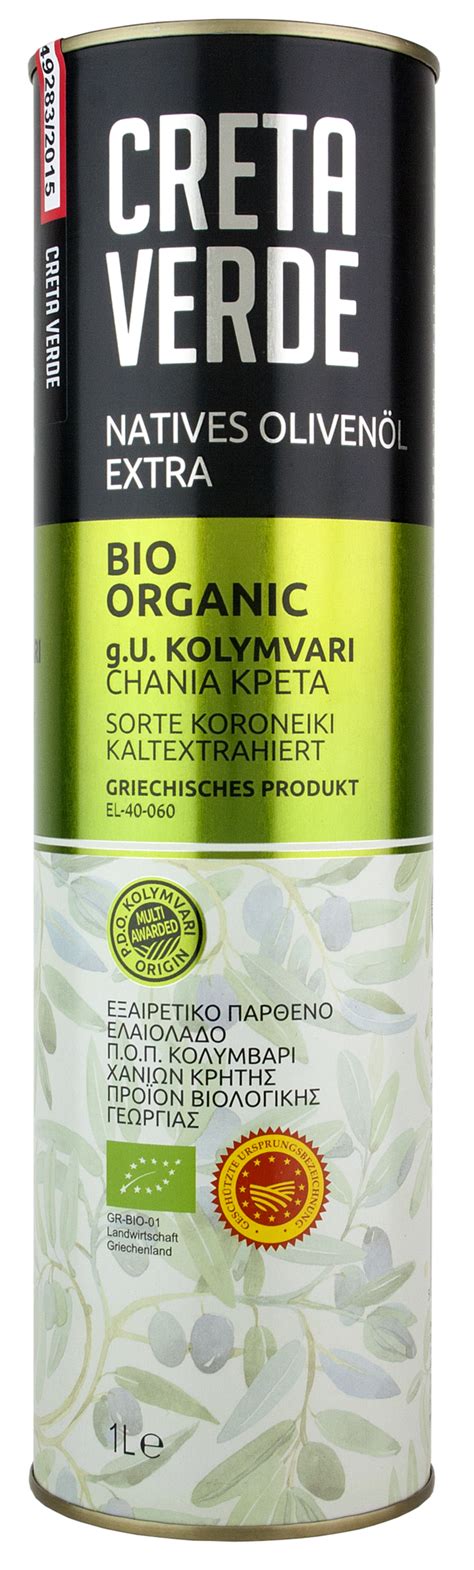 Elea Creta Reviews Analysis. . Creta verde olive oil review